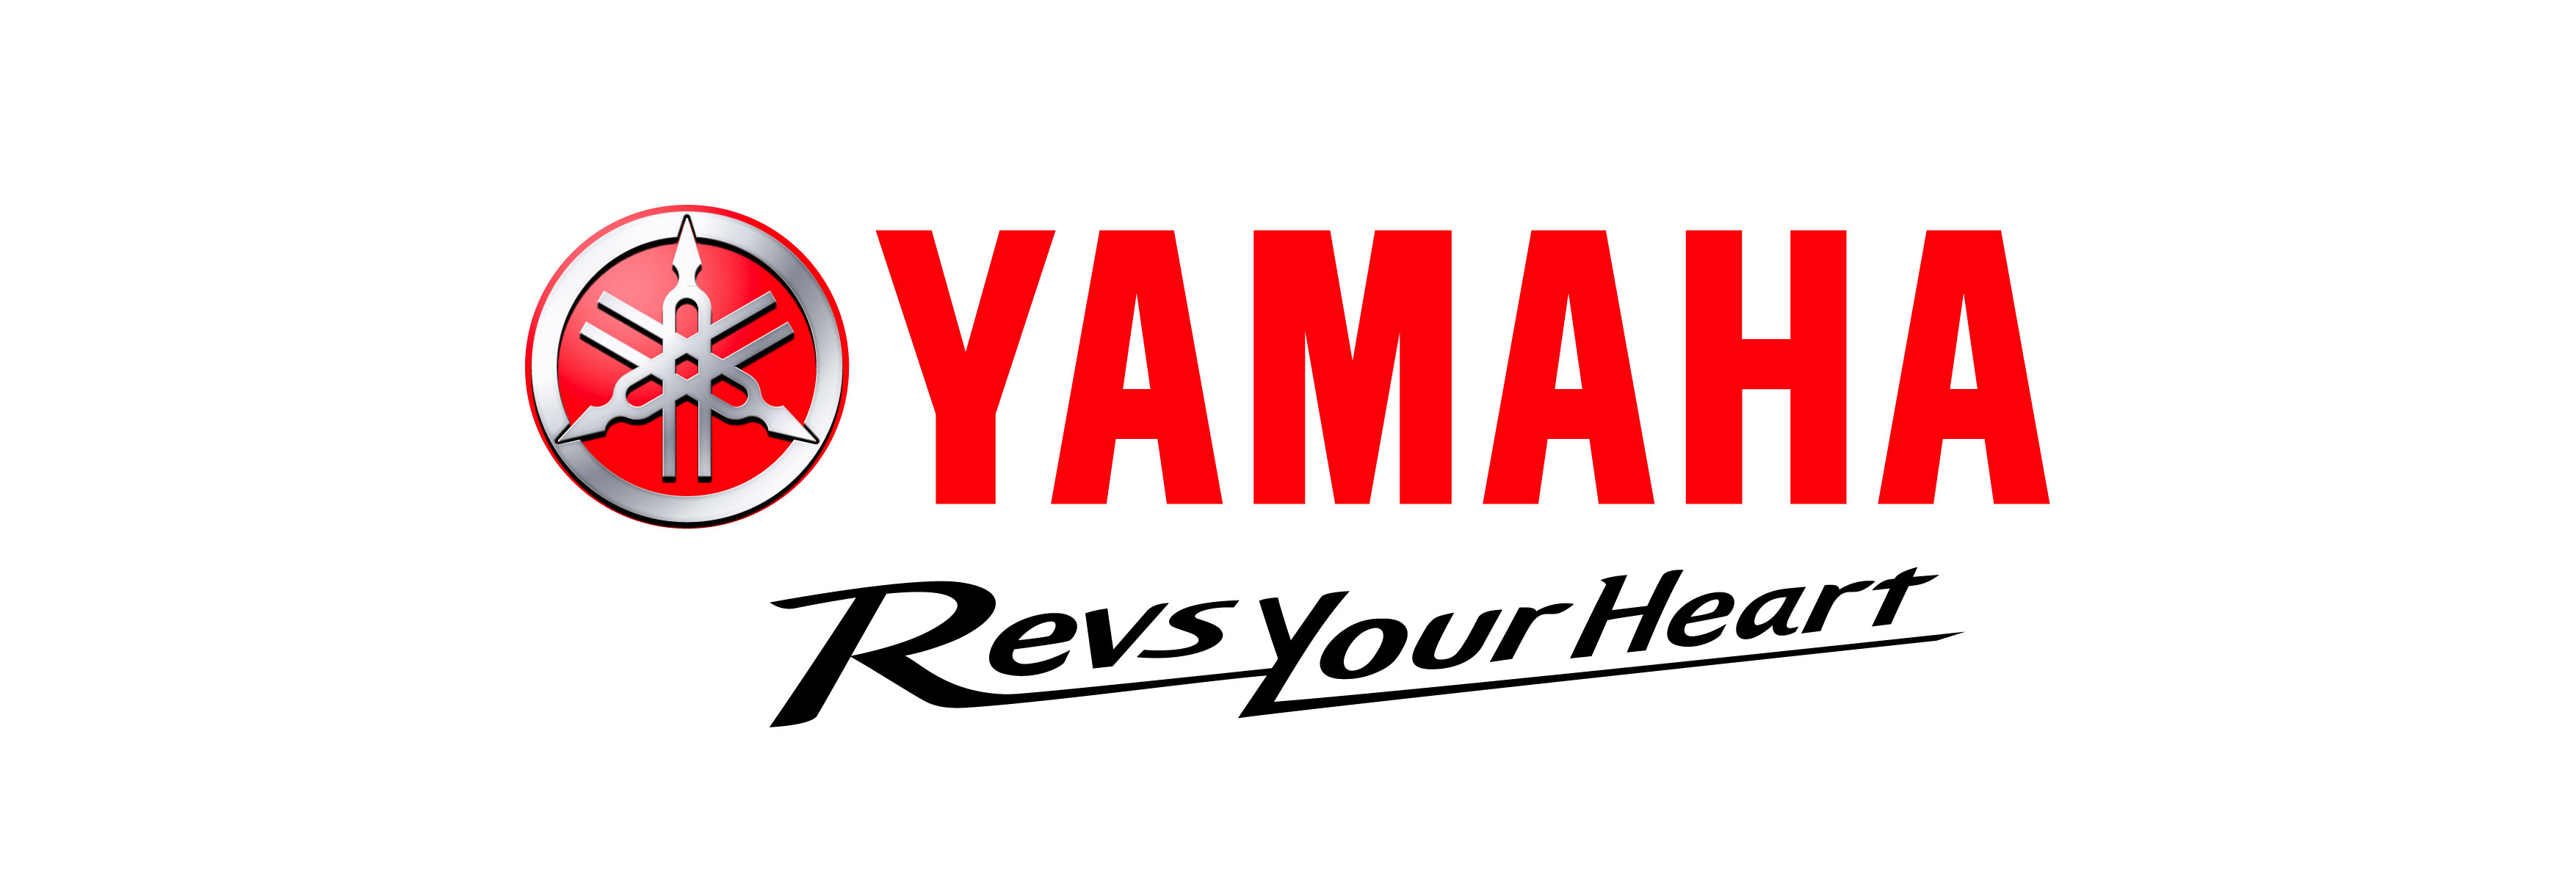 Yamaha Motorrad Zubehör - Seite 4 - Yamaha Ersatzteile